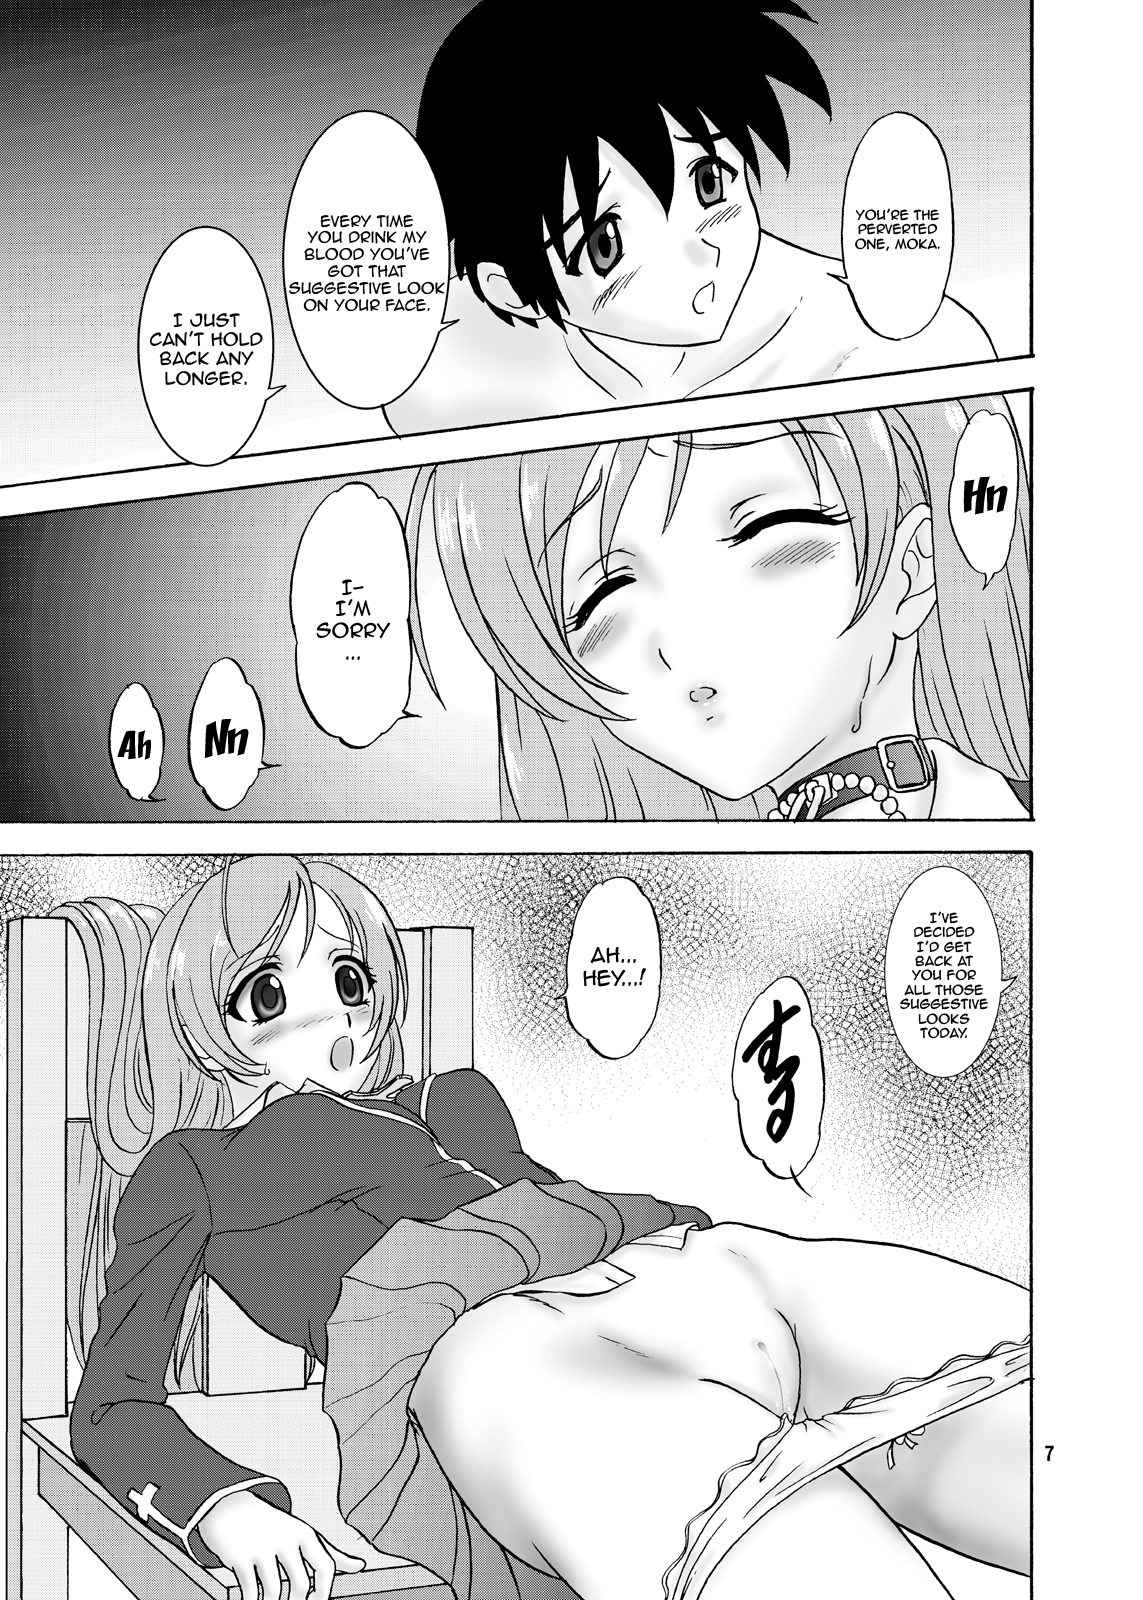 Moka & Mocha hentai manga picture 6